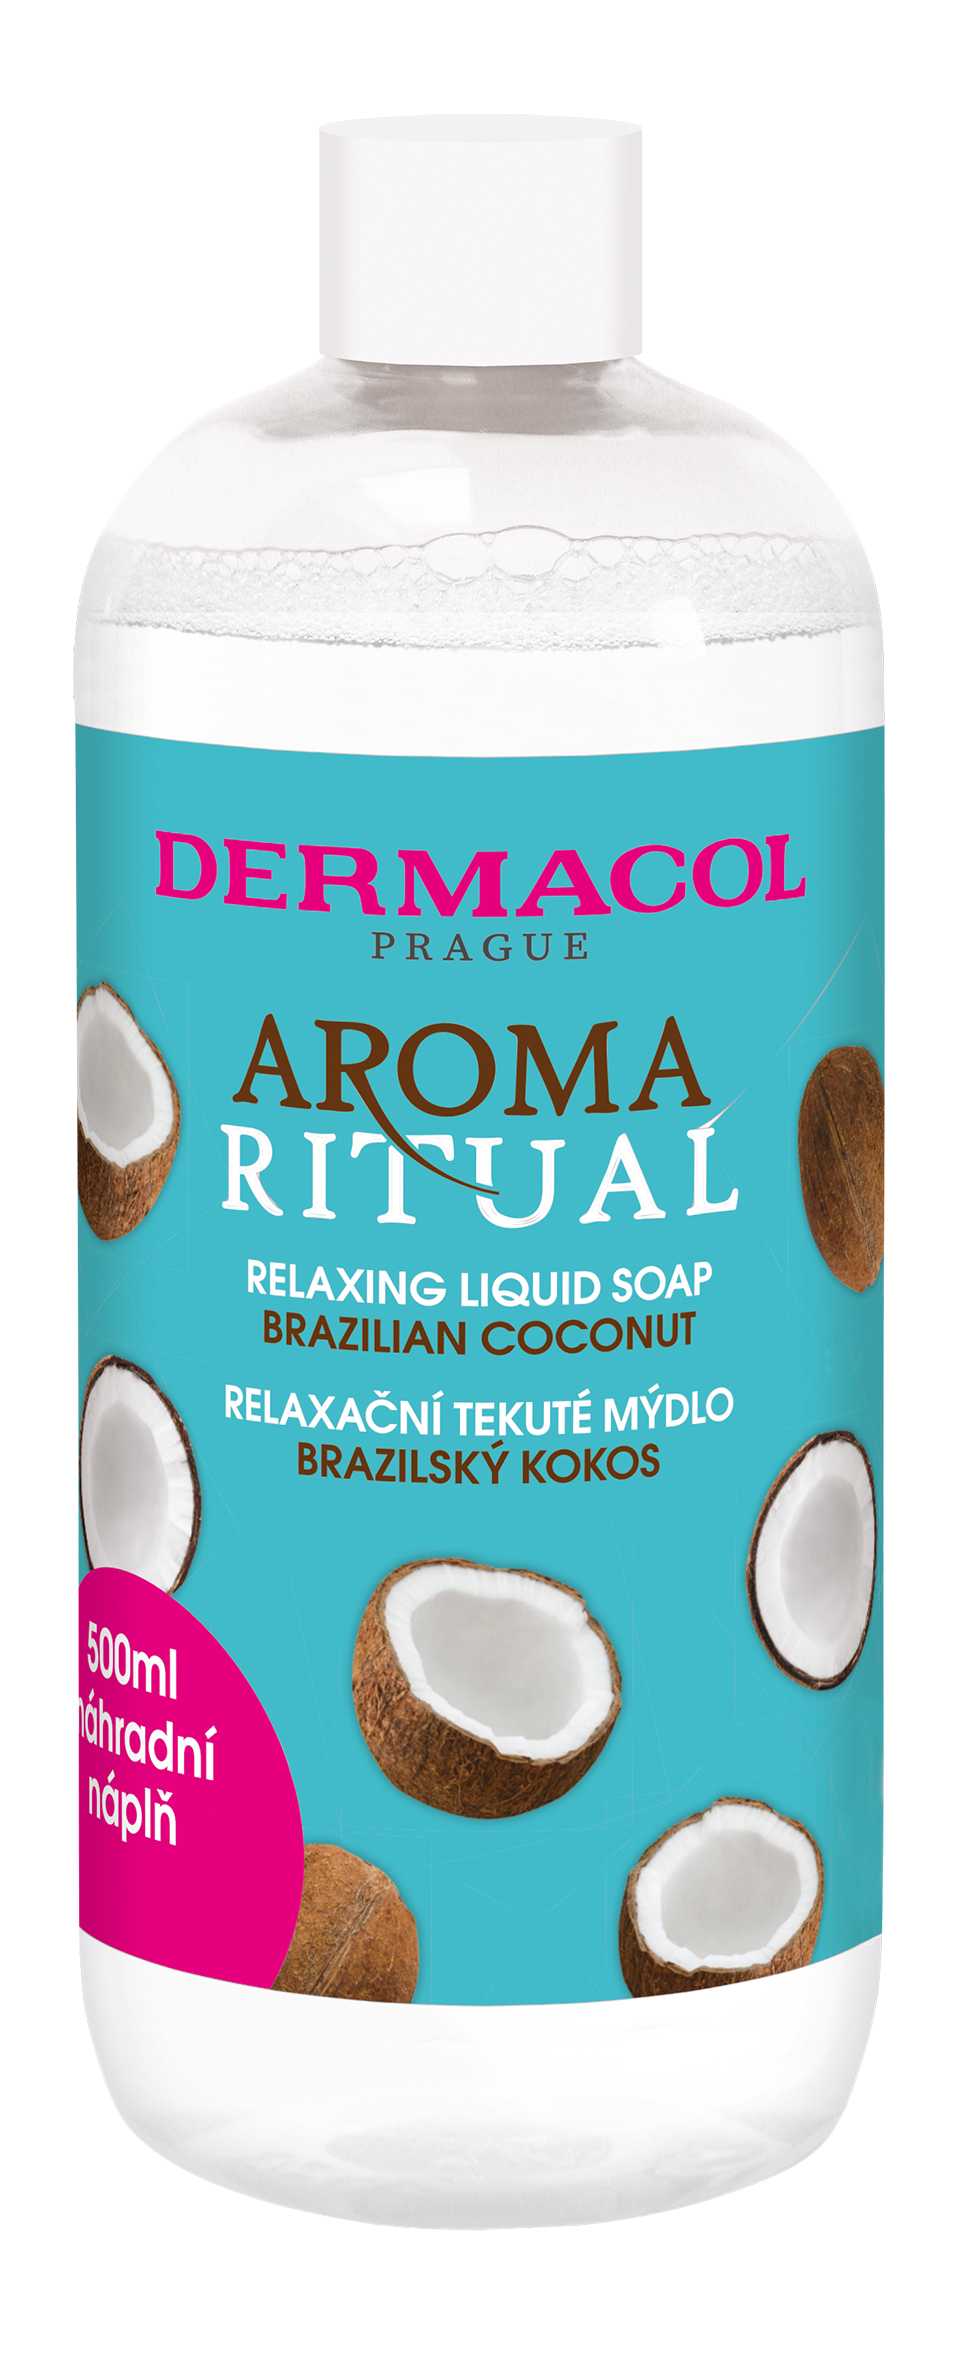 Dermacol Aroma Ritual tekuté mydlo brazilský kokos - náhradná náplň